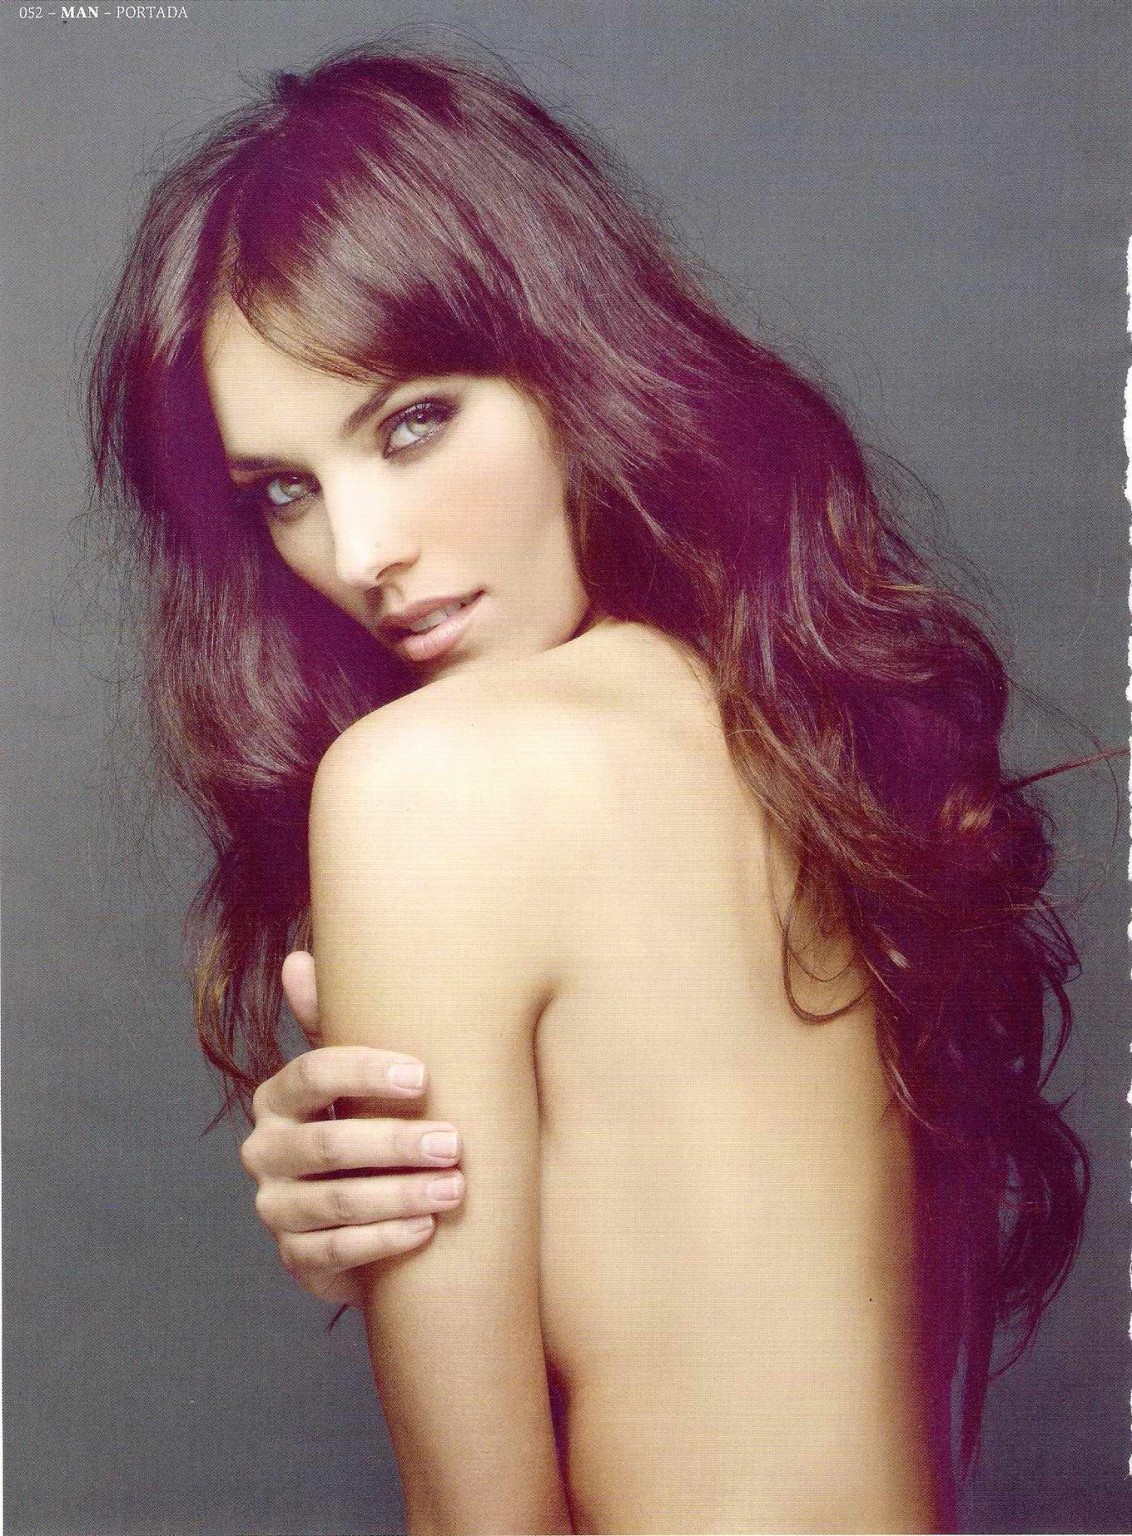 Helen lindes seins nus mais cachant ses seins pour le magazine espagnol Man.
 #75314591